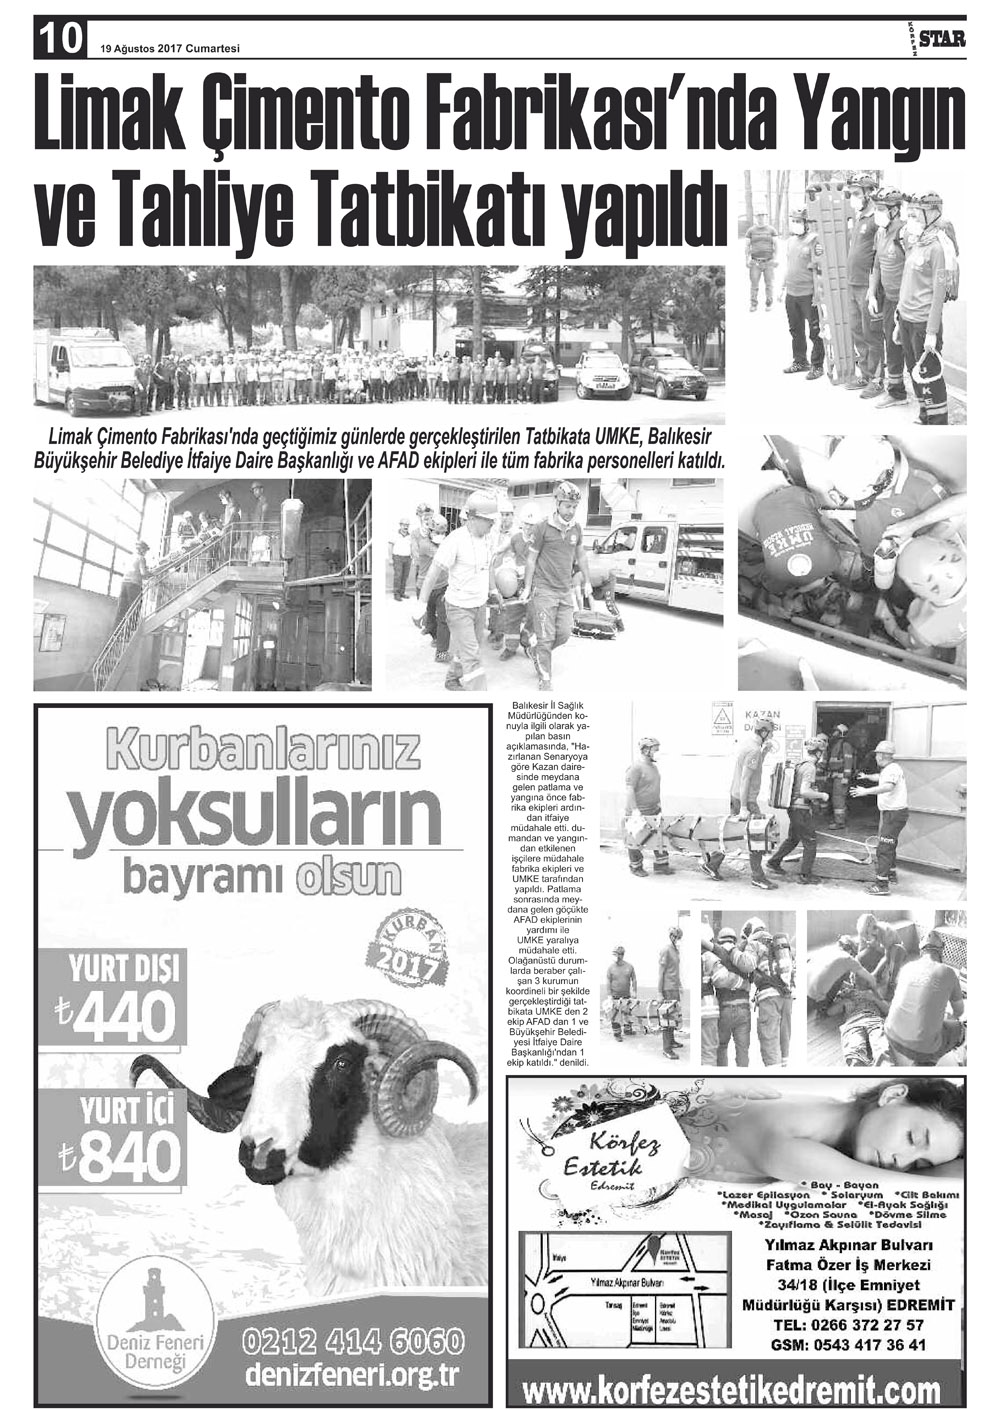 19082017-tarihli-gazetemiz-9517-08-18030916.jpg